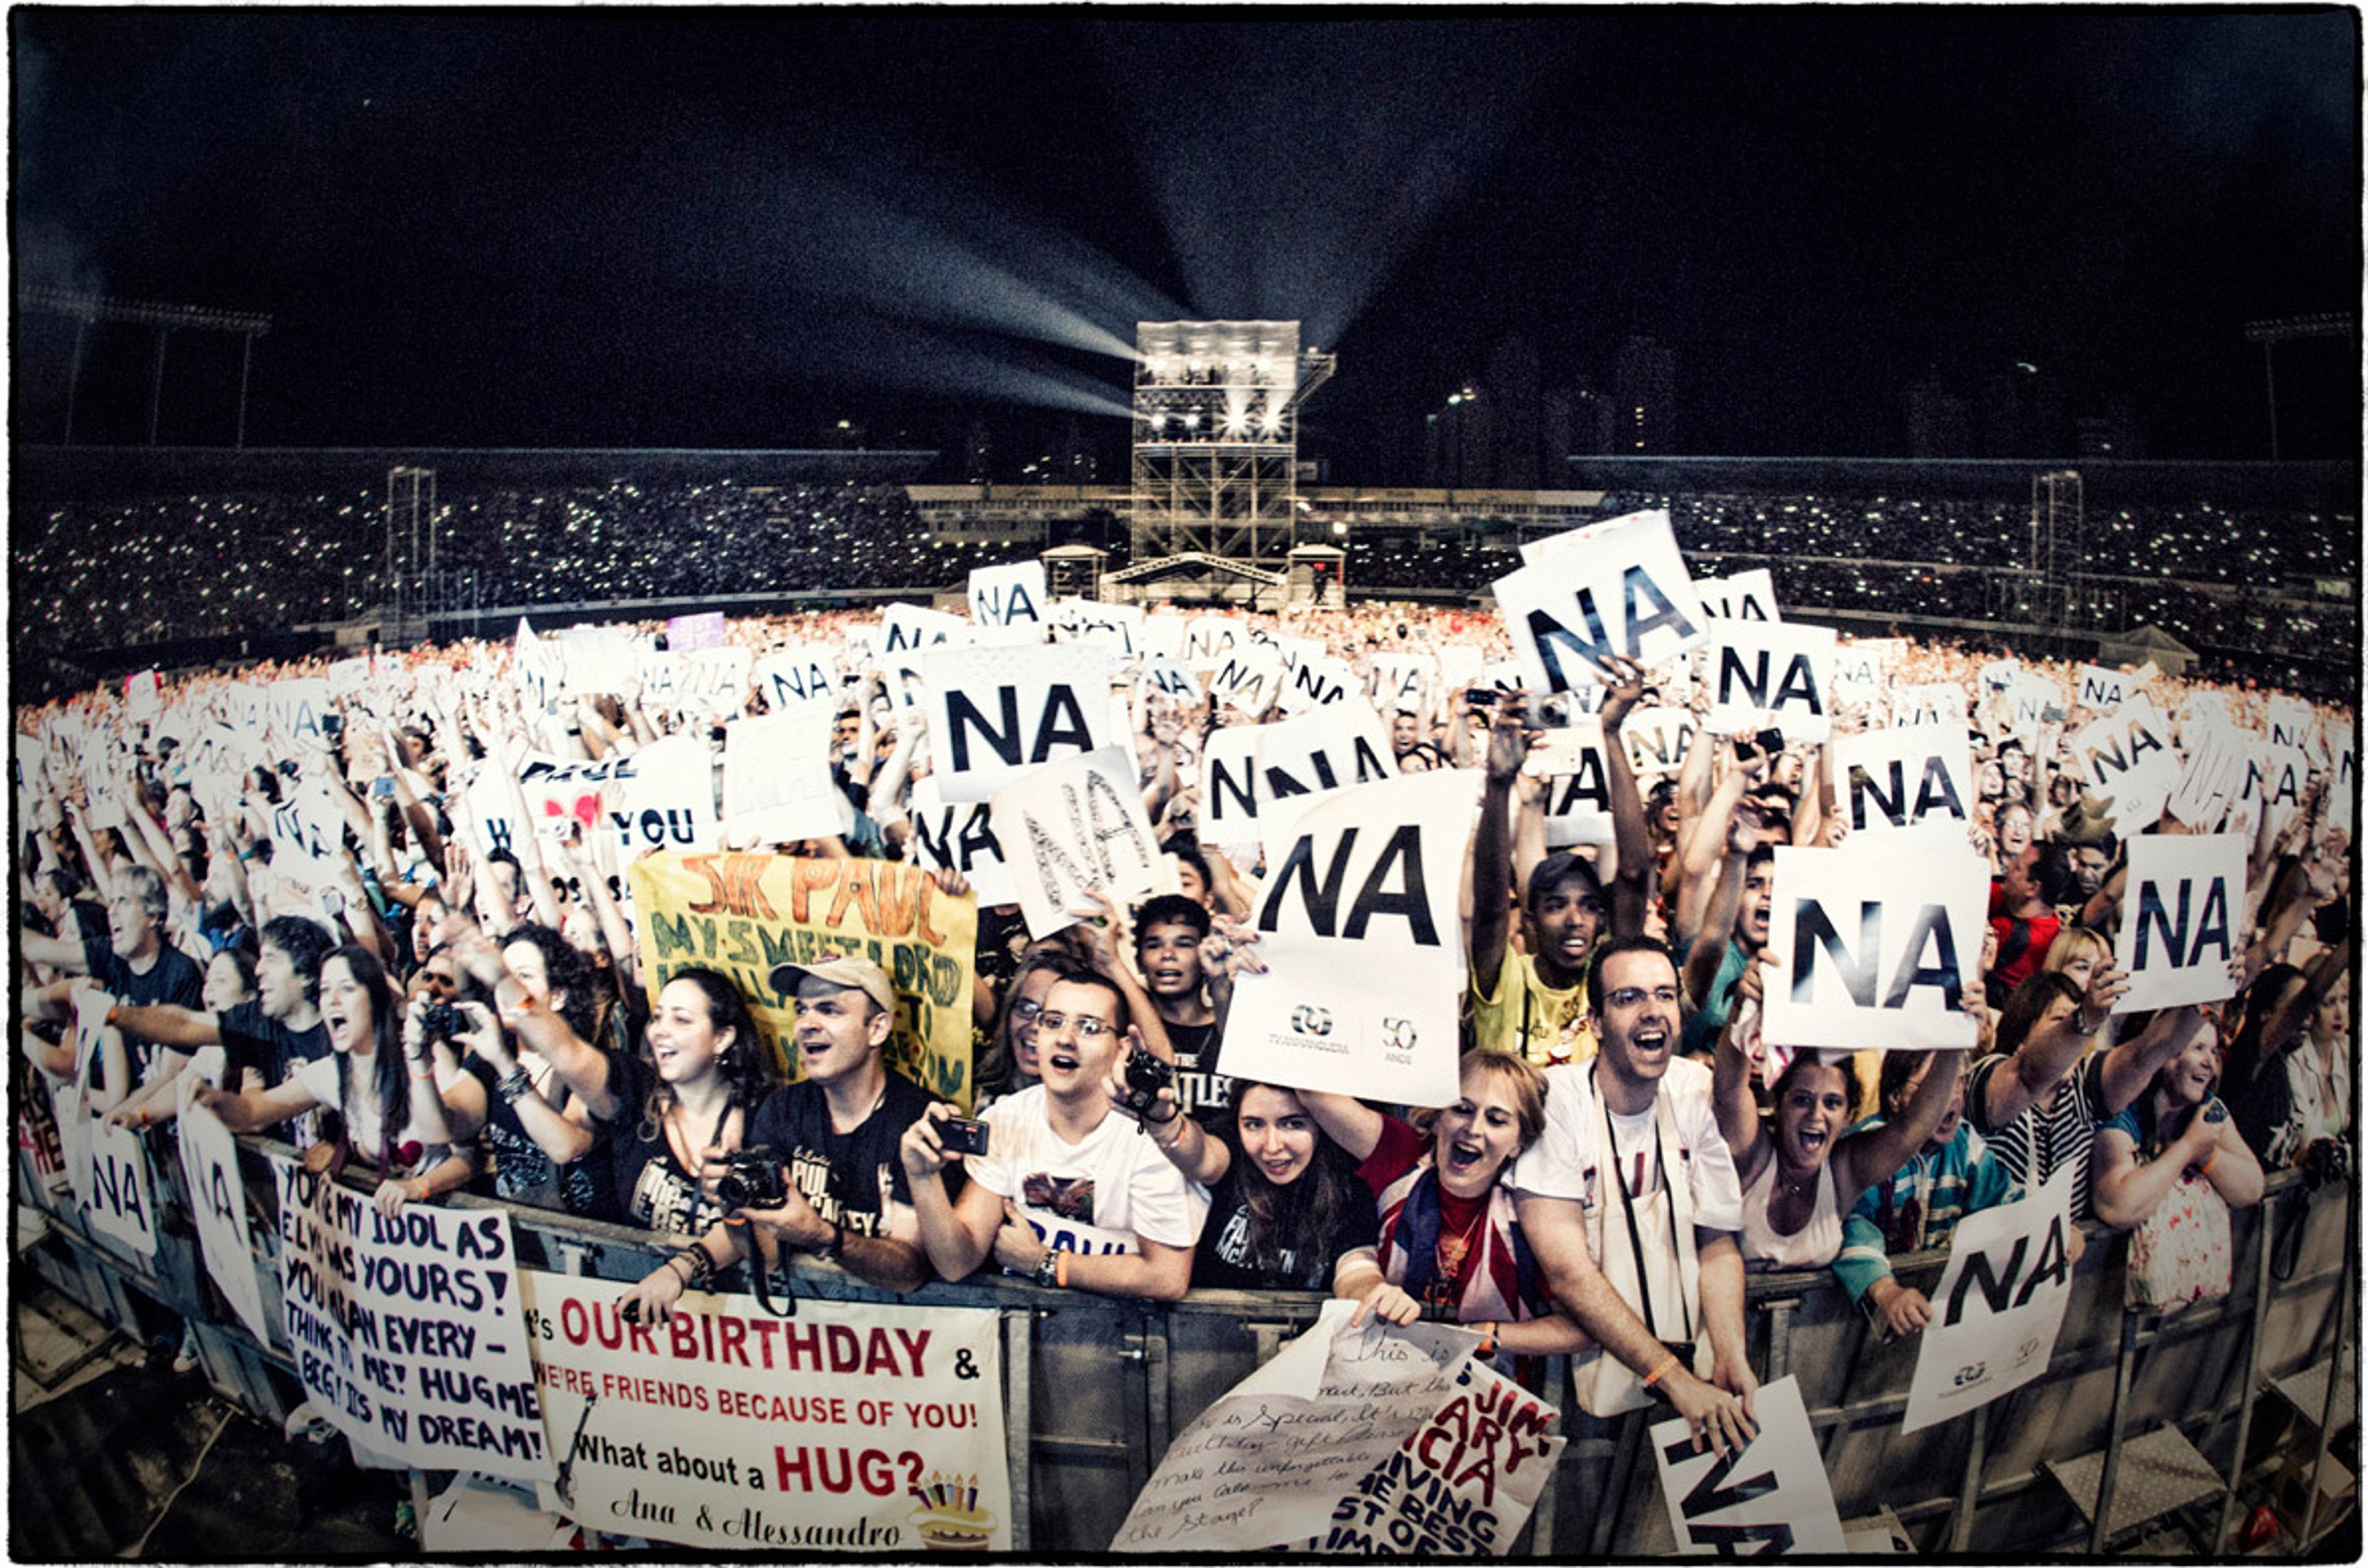 The crowd in Goiânia, Goiânia, Brazil, 6th May 2013